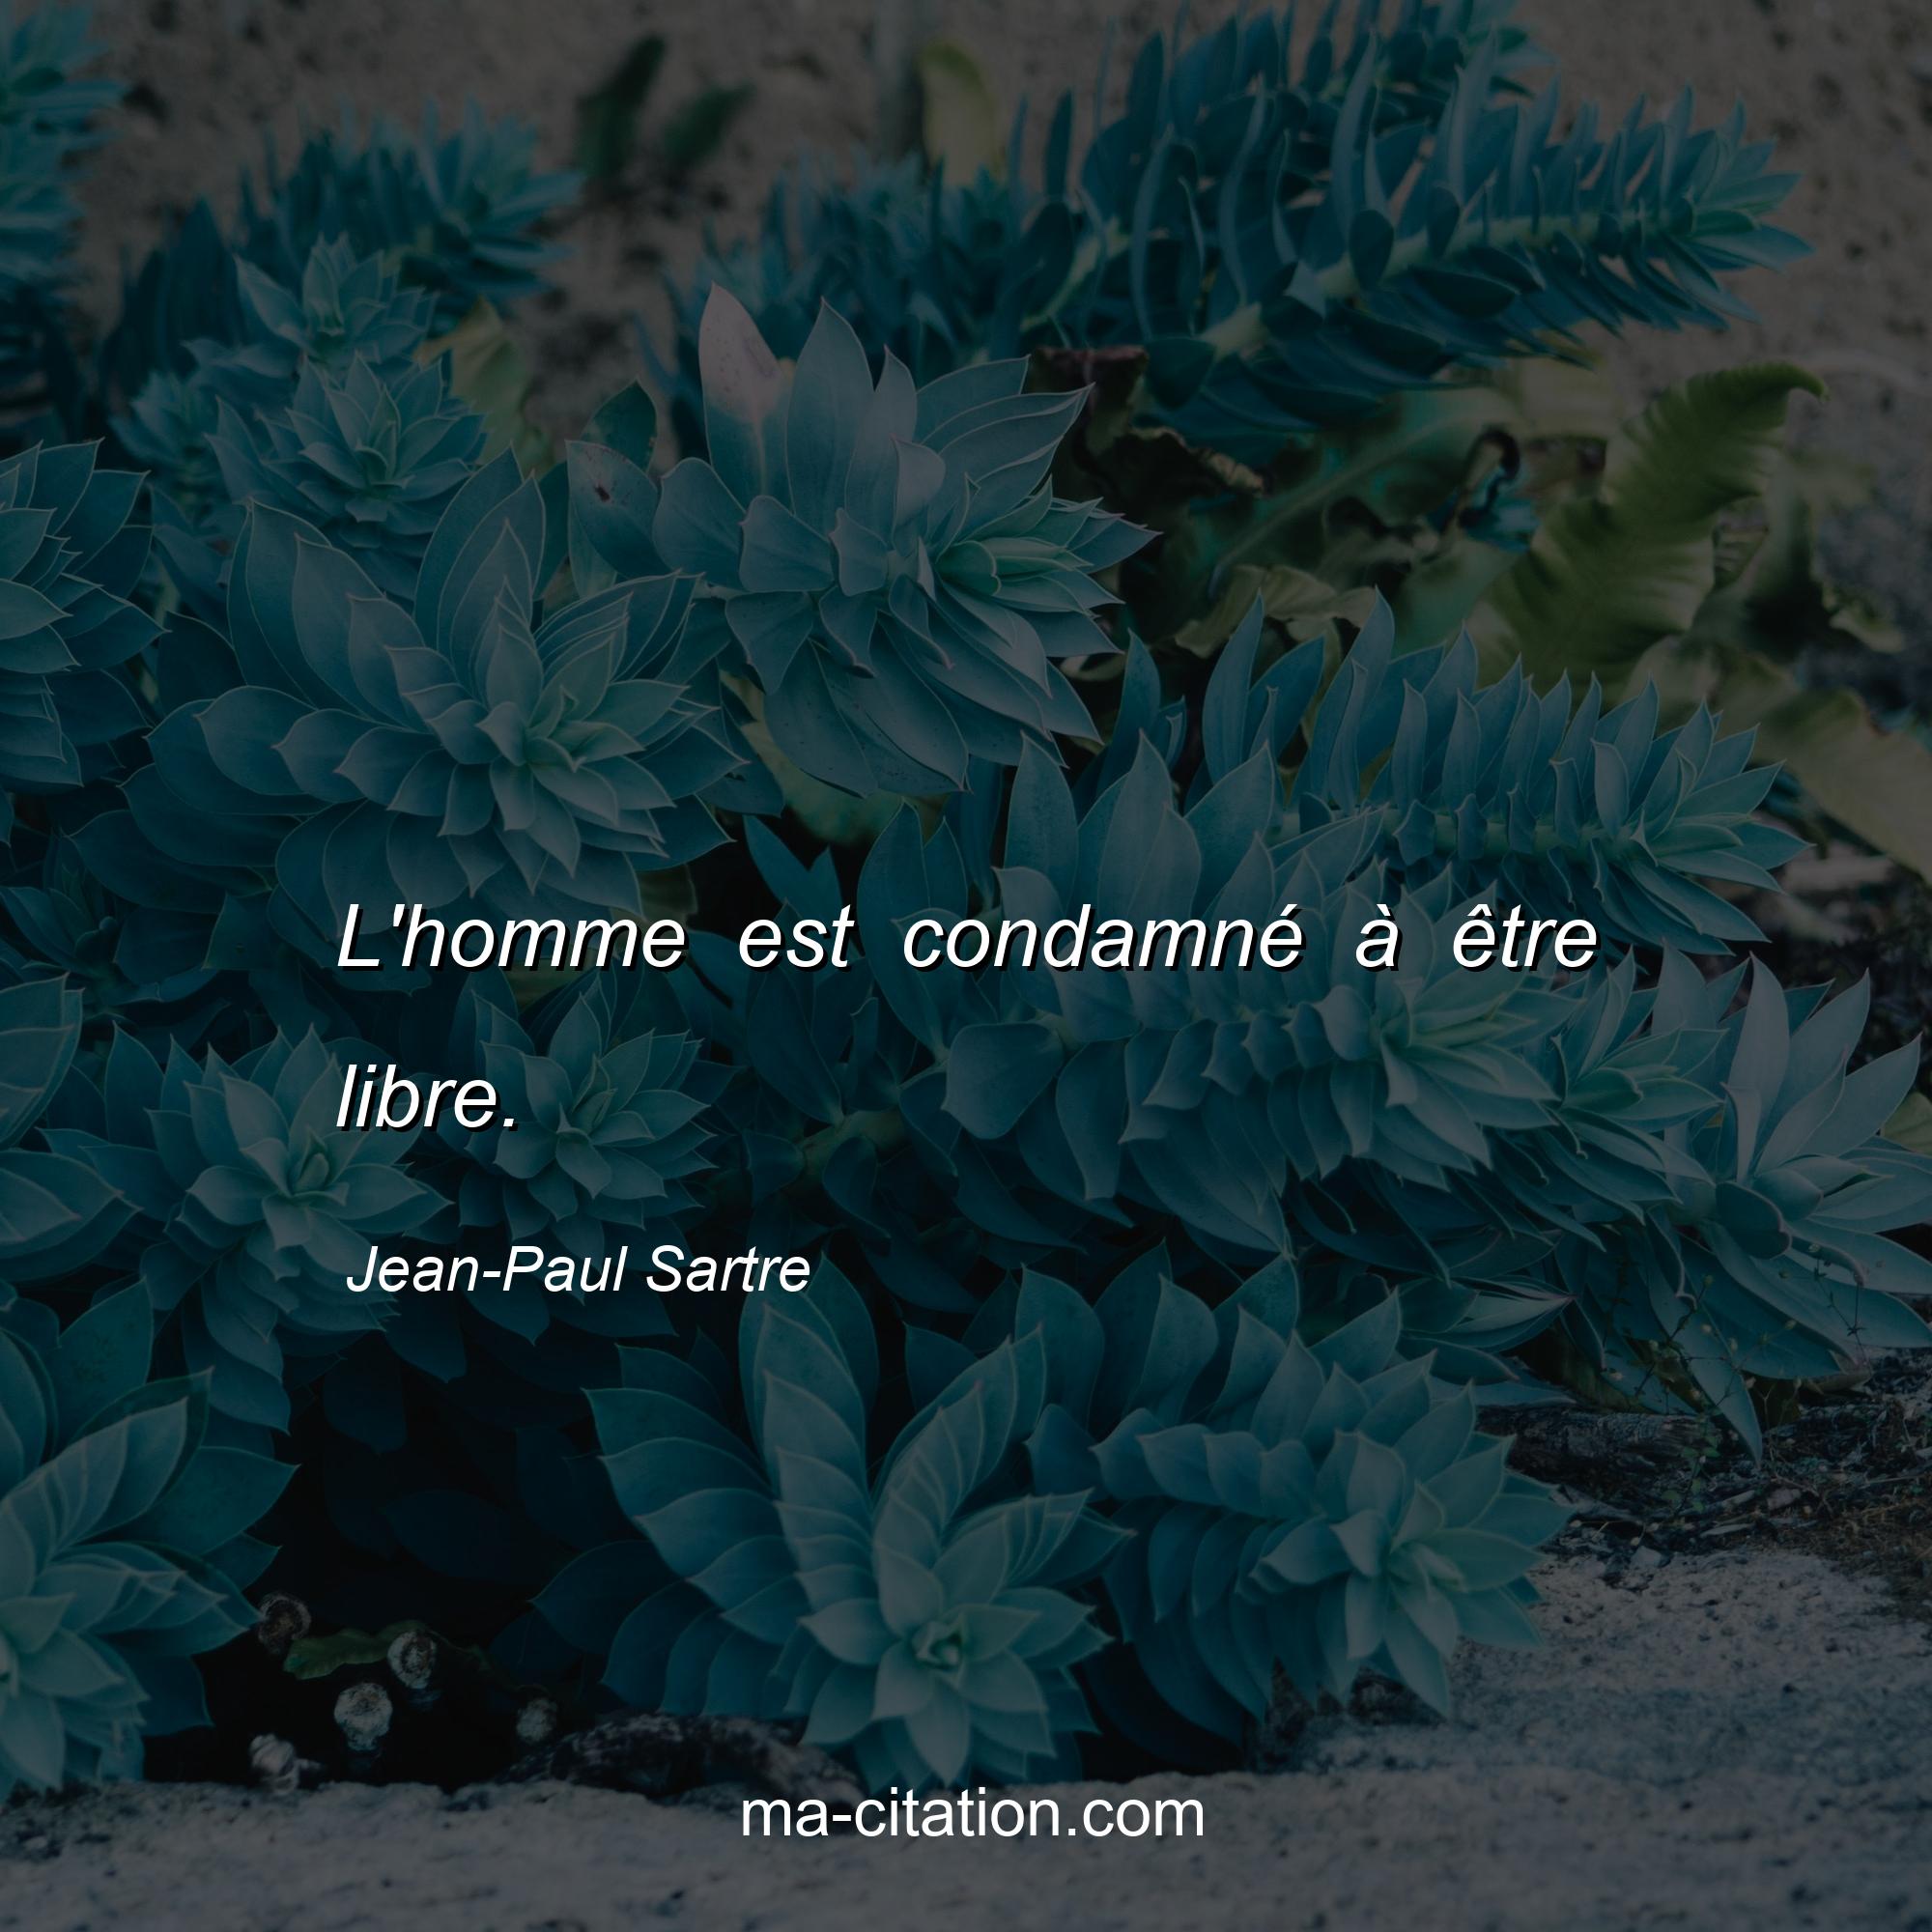 Jean-Paul Sartre : L'homme est condamné à être libre.